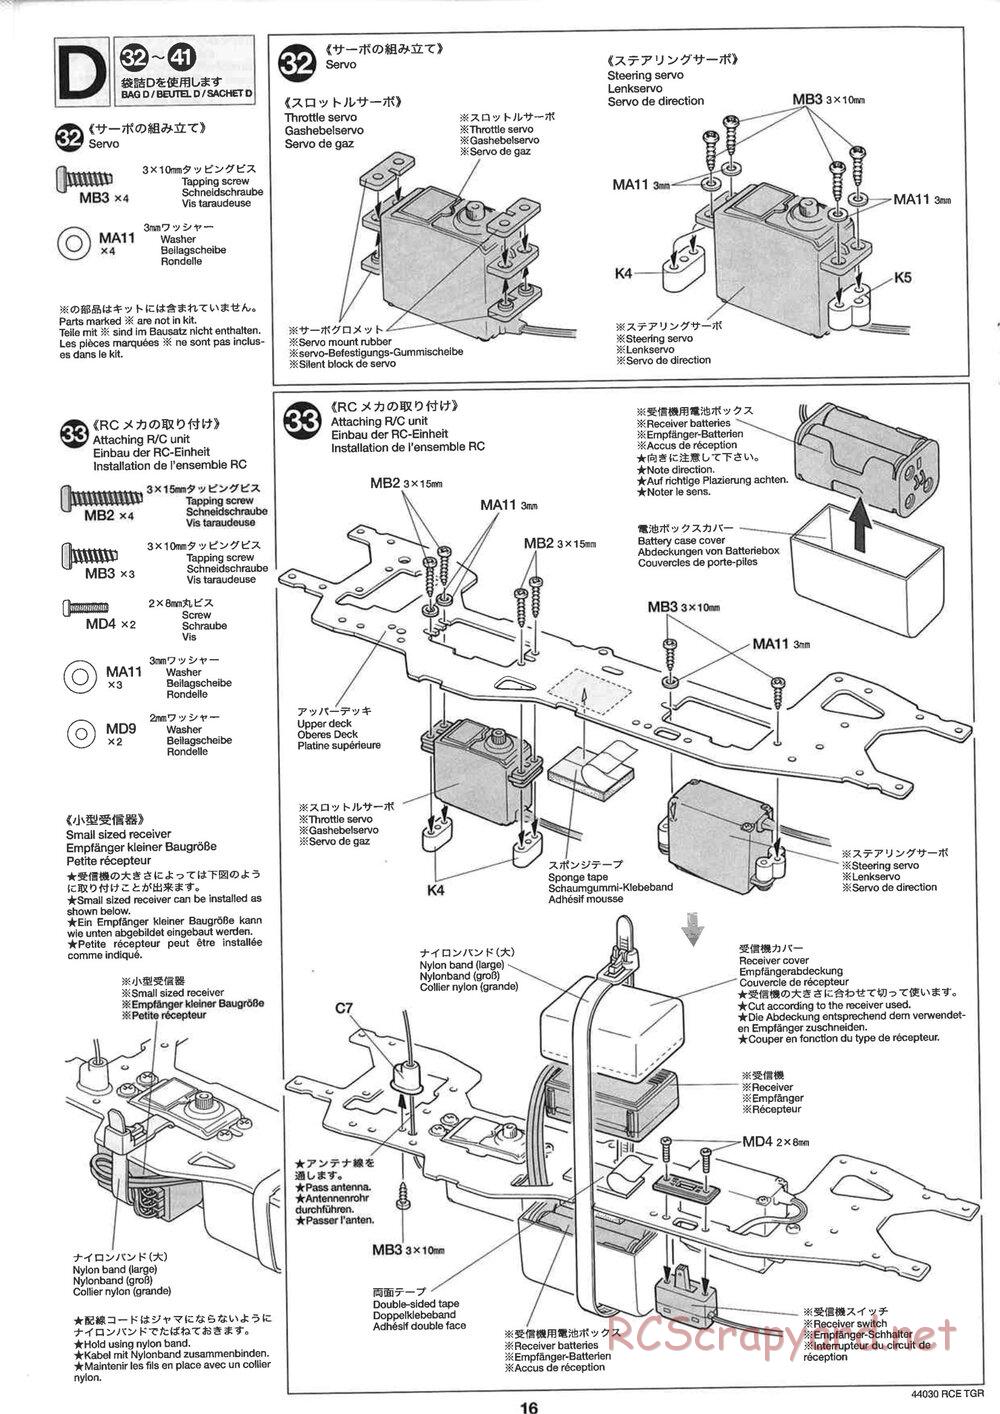 Tamiya - TGR Chassis - Manual - Page 16